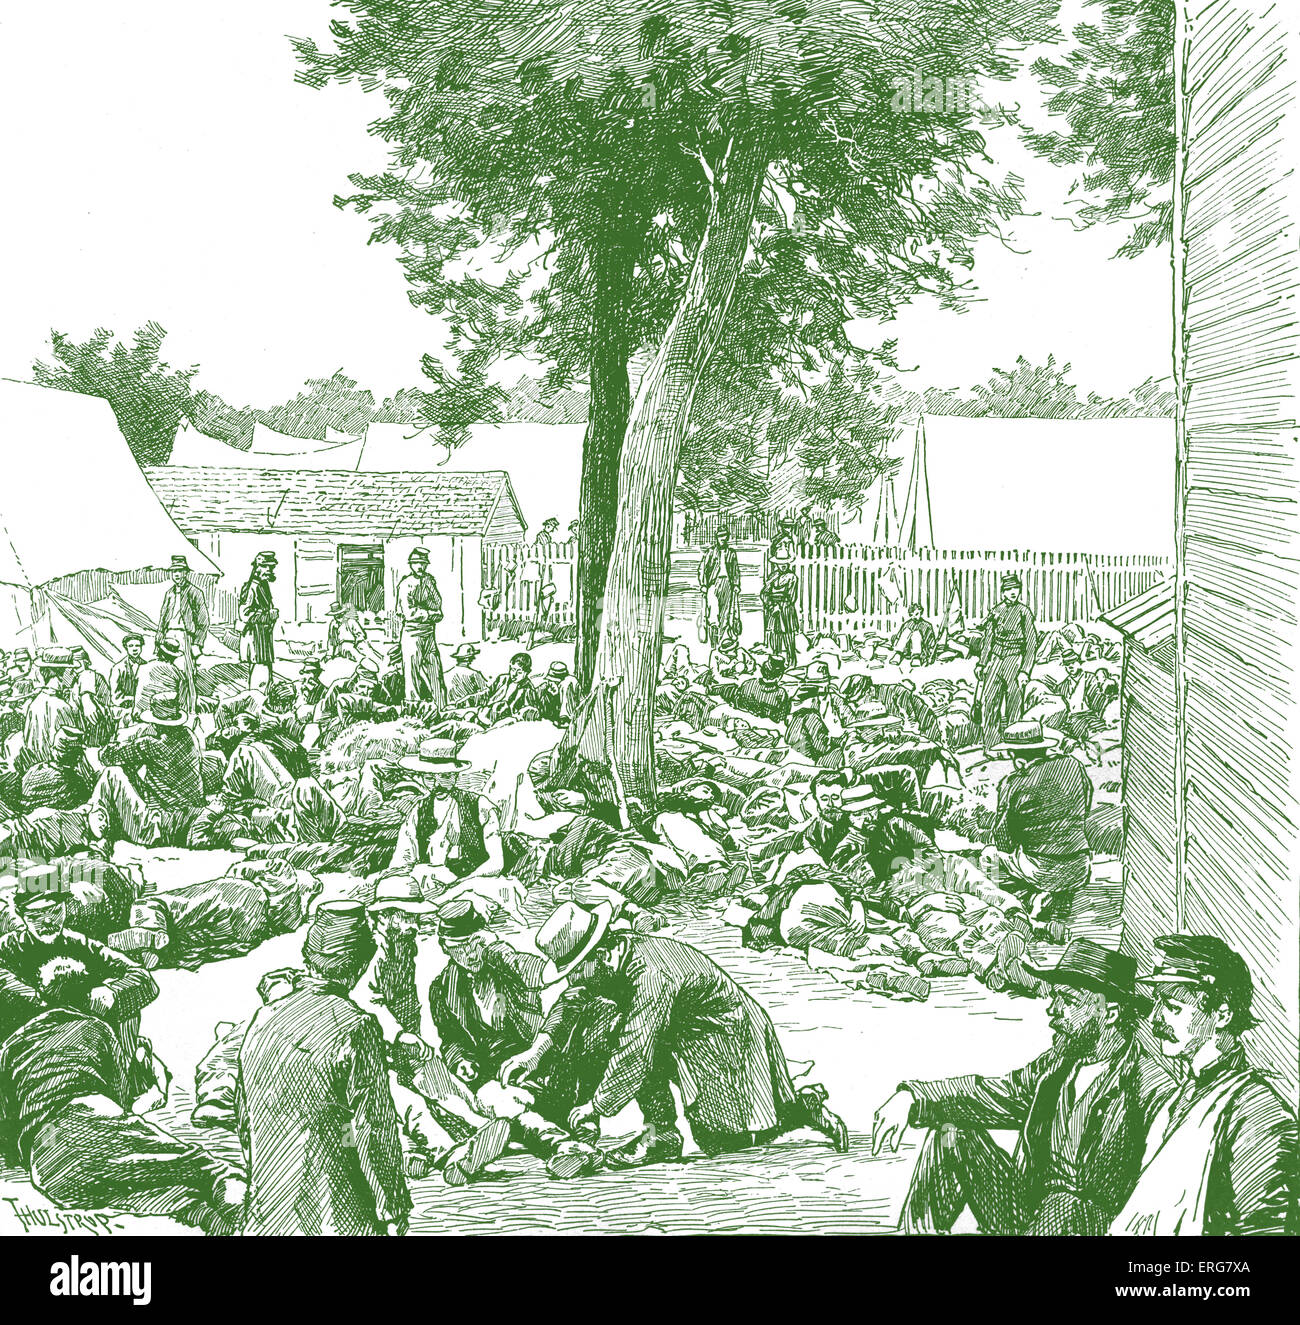 Union-Lazarett - amerikanischer Bürgerkrieg. Vor der Armee Rückzug am 30. Juni 1862 nach Niederlage an Schlacht von Gaine Mühle im Hanover County, Virginia, USA. Stockfoto